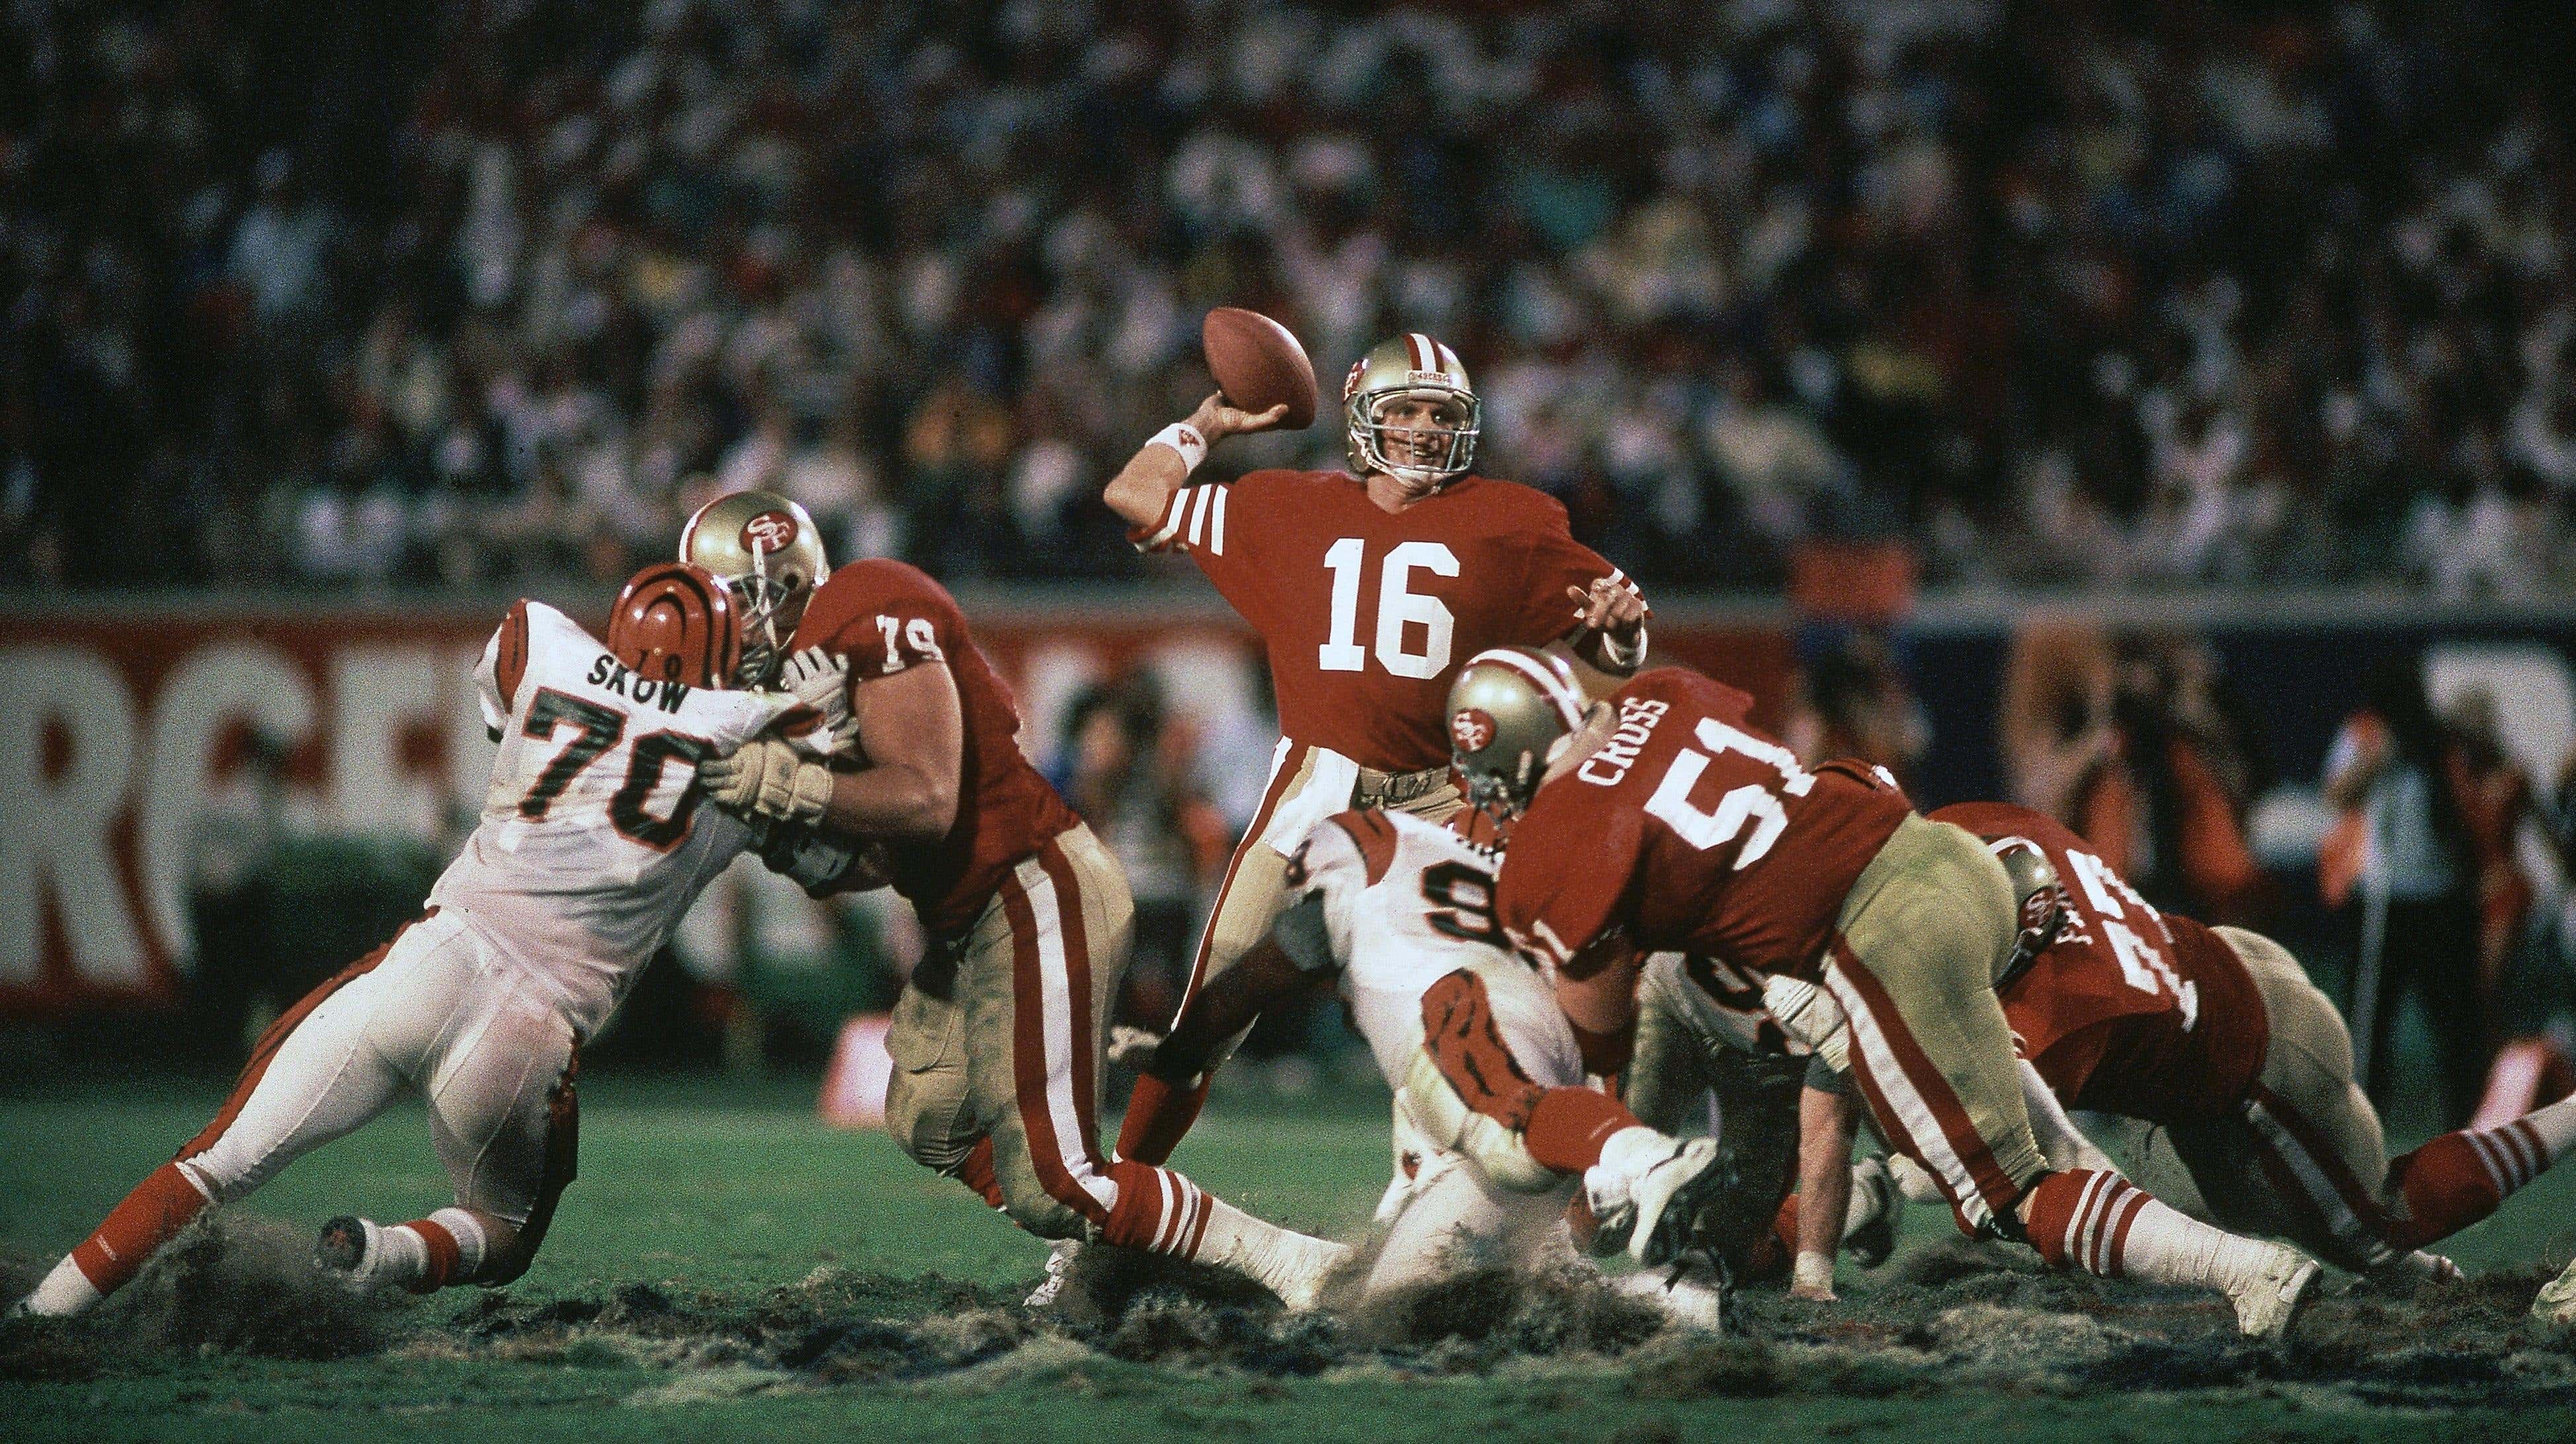 Imagen para el artículo titulado Los mejores momentos individuales del Super Bowl de los jugadores de los Chiefs y los 49ers